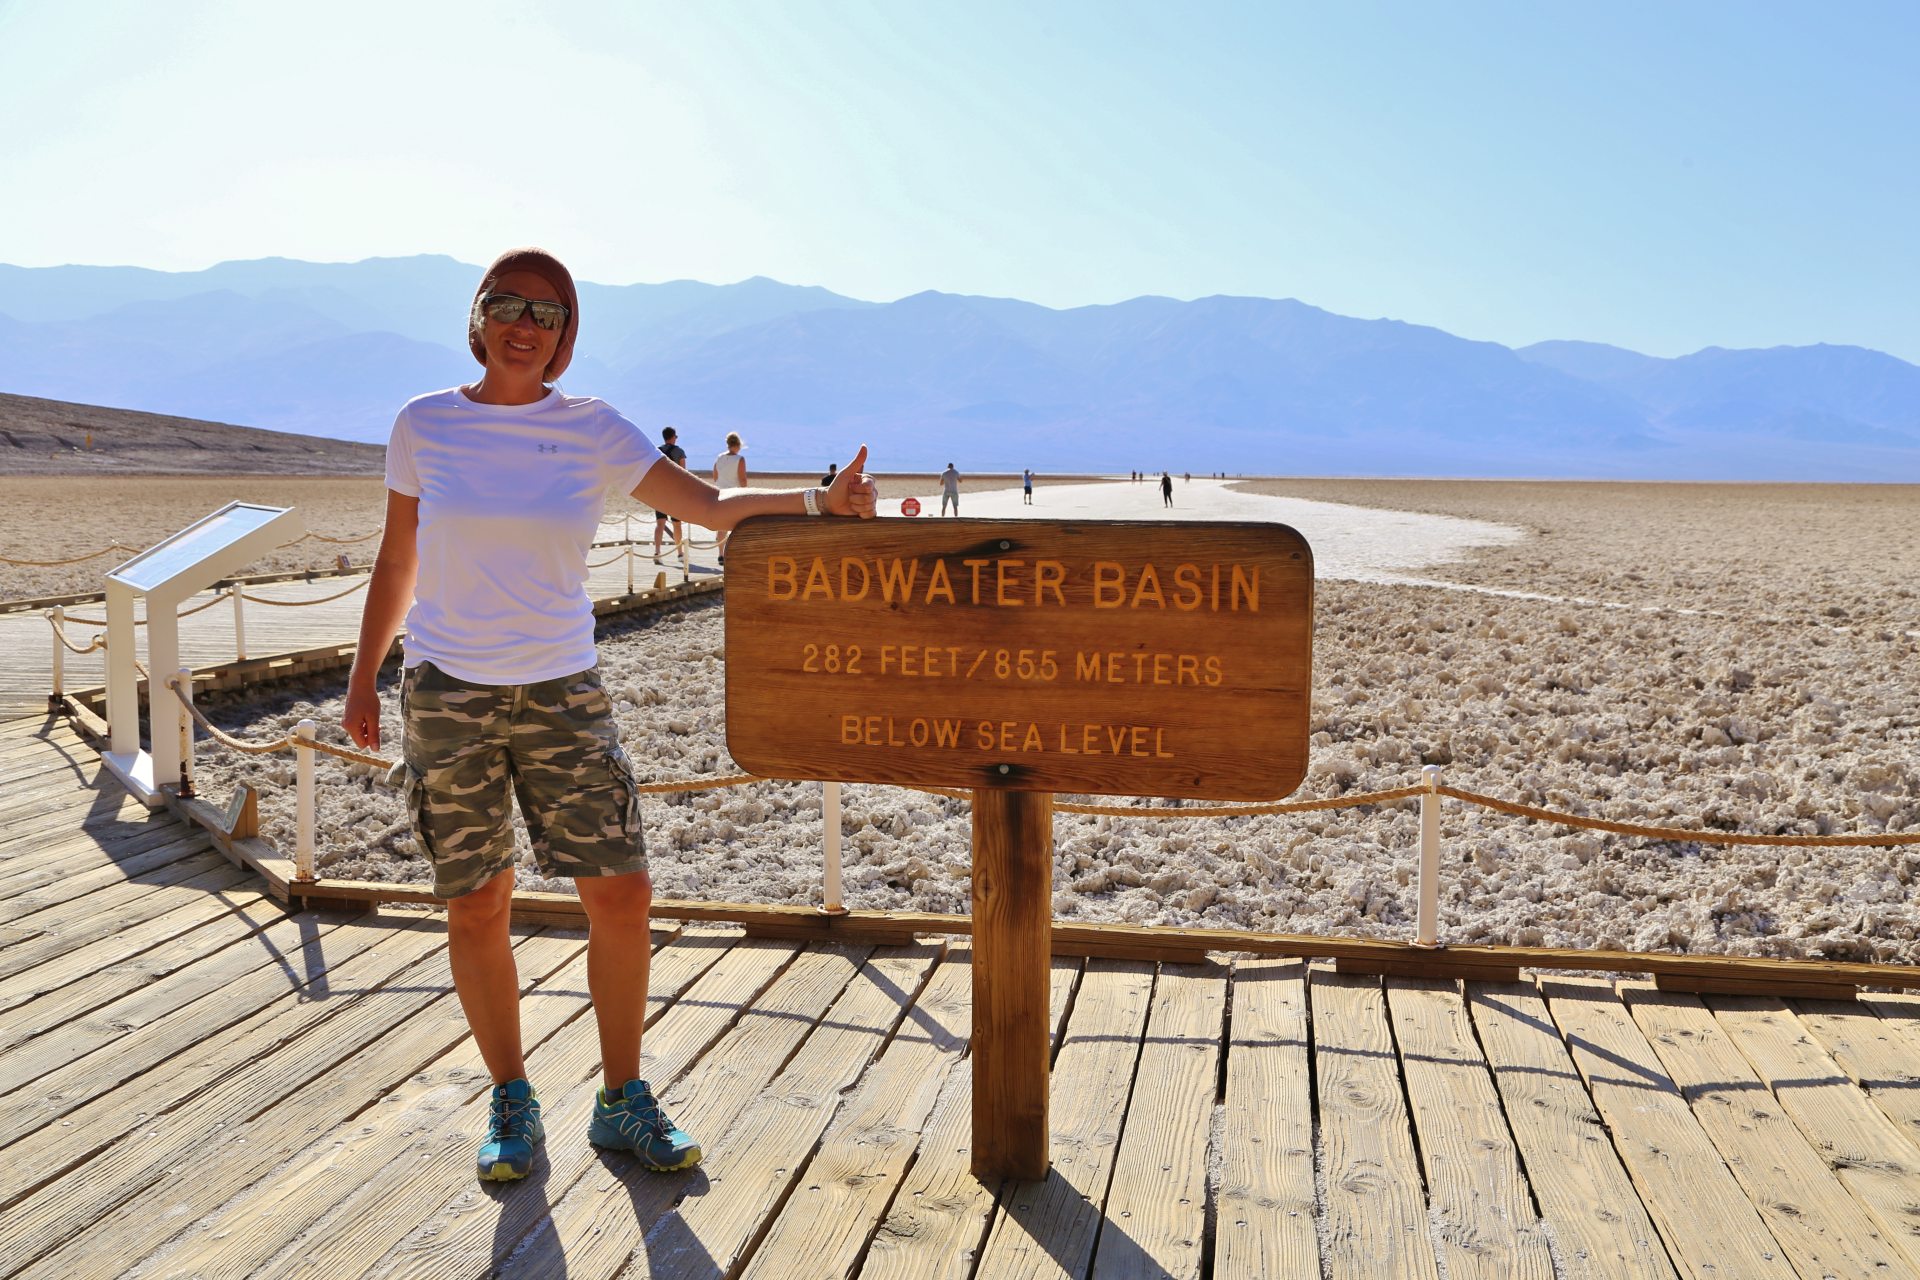 Bitte Lächeln, während 44 Grad heiße Föhnluft ins Gesicht bläst! - Badwater, Blondine, Death Valley National Park, Himmel, Kalifornien, malerisch, Mojave-Wüste, Personen, Portrait, Porträt, traumhaft, Wüste - HOFBAUER-HOFMANN Sofia - (Badwater, Death Valley, Kalifornien, Vereinigte Staaten)